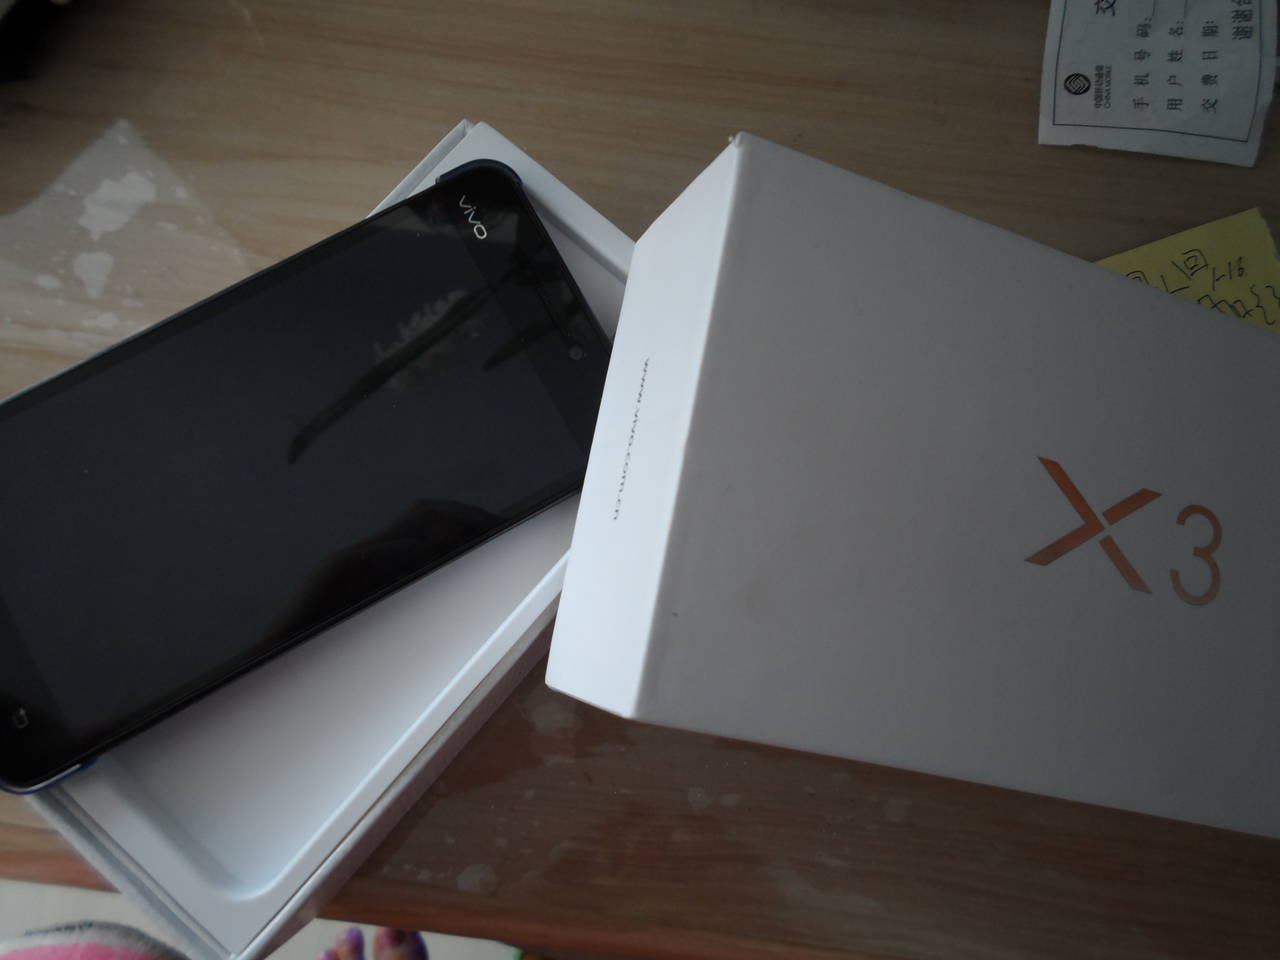 出售台步步高手机X3昨天晚上刚买,9.9新-手机